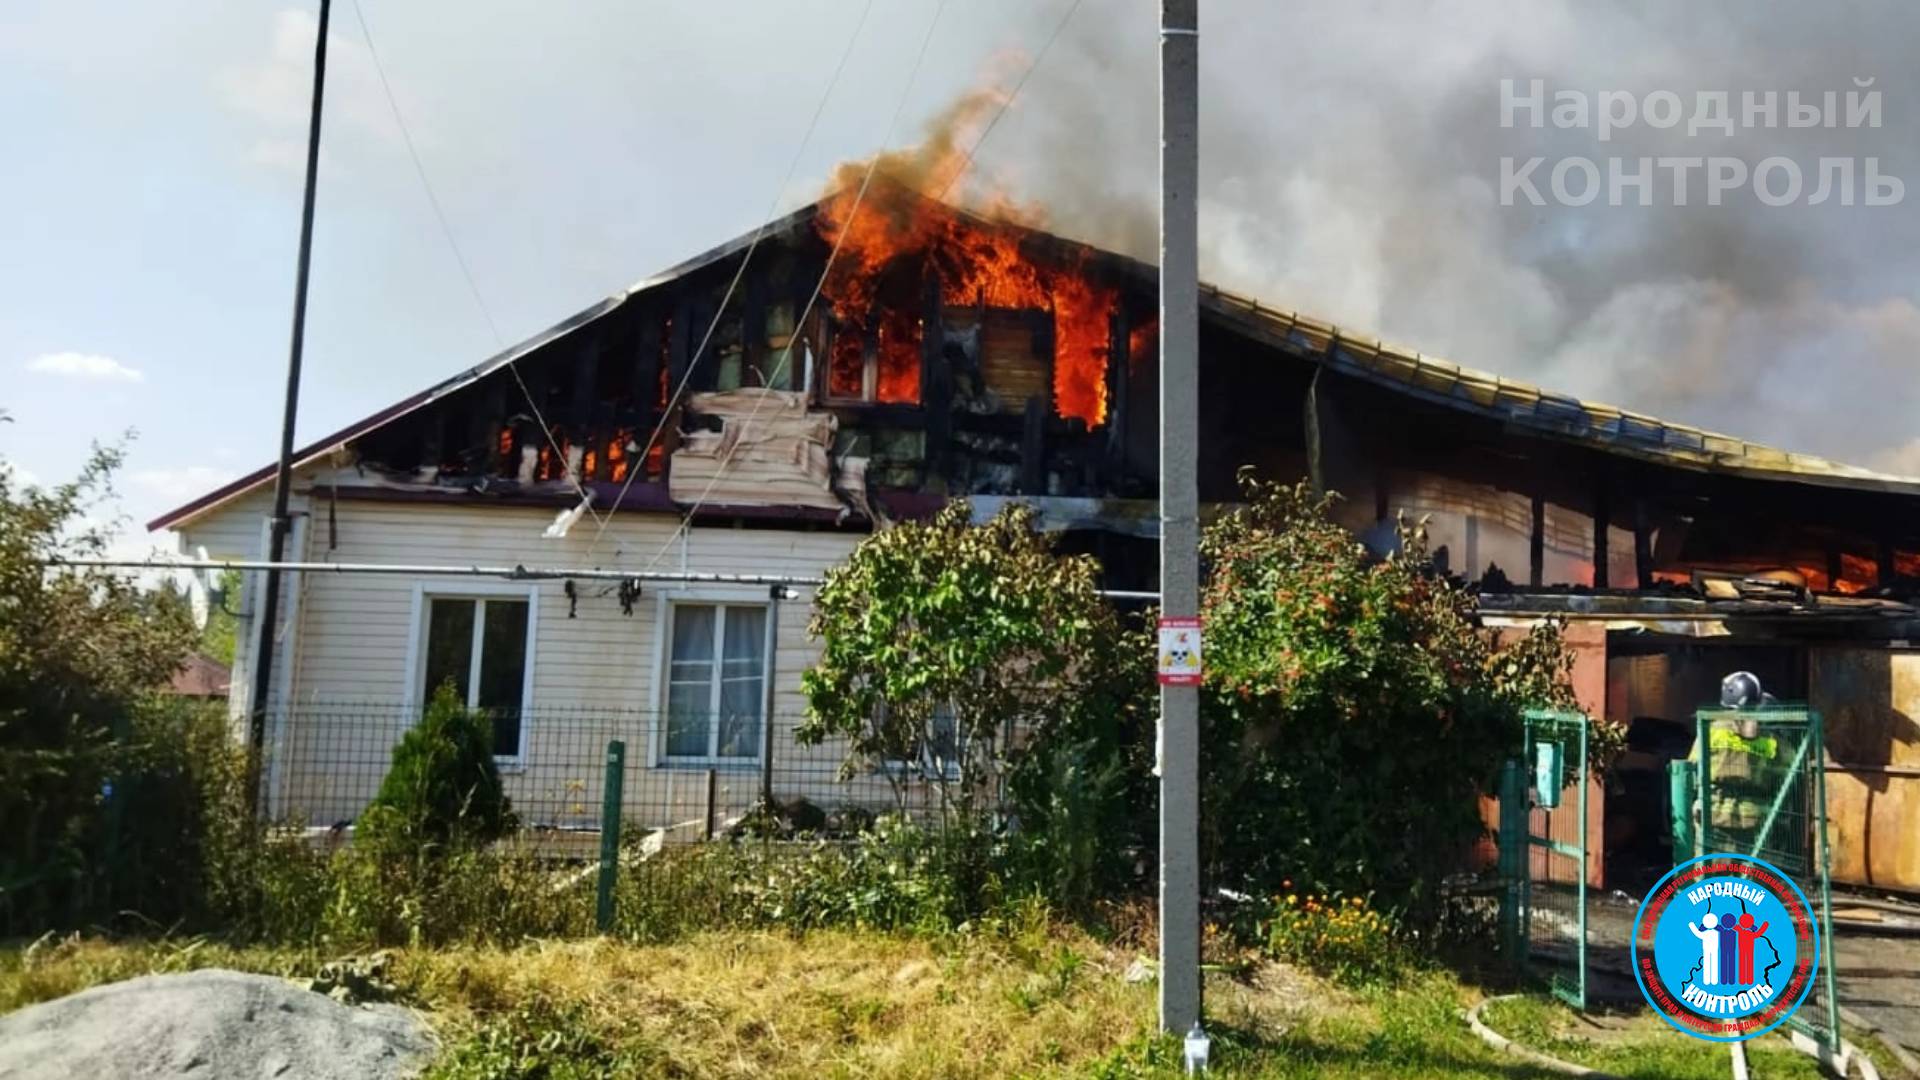 Пожарные с дырявыми шлангами тушили горящий дом всего 2 минуты, но оставили догорать в ГО Ревда